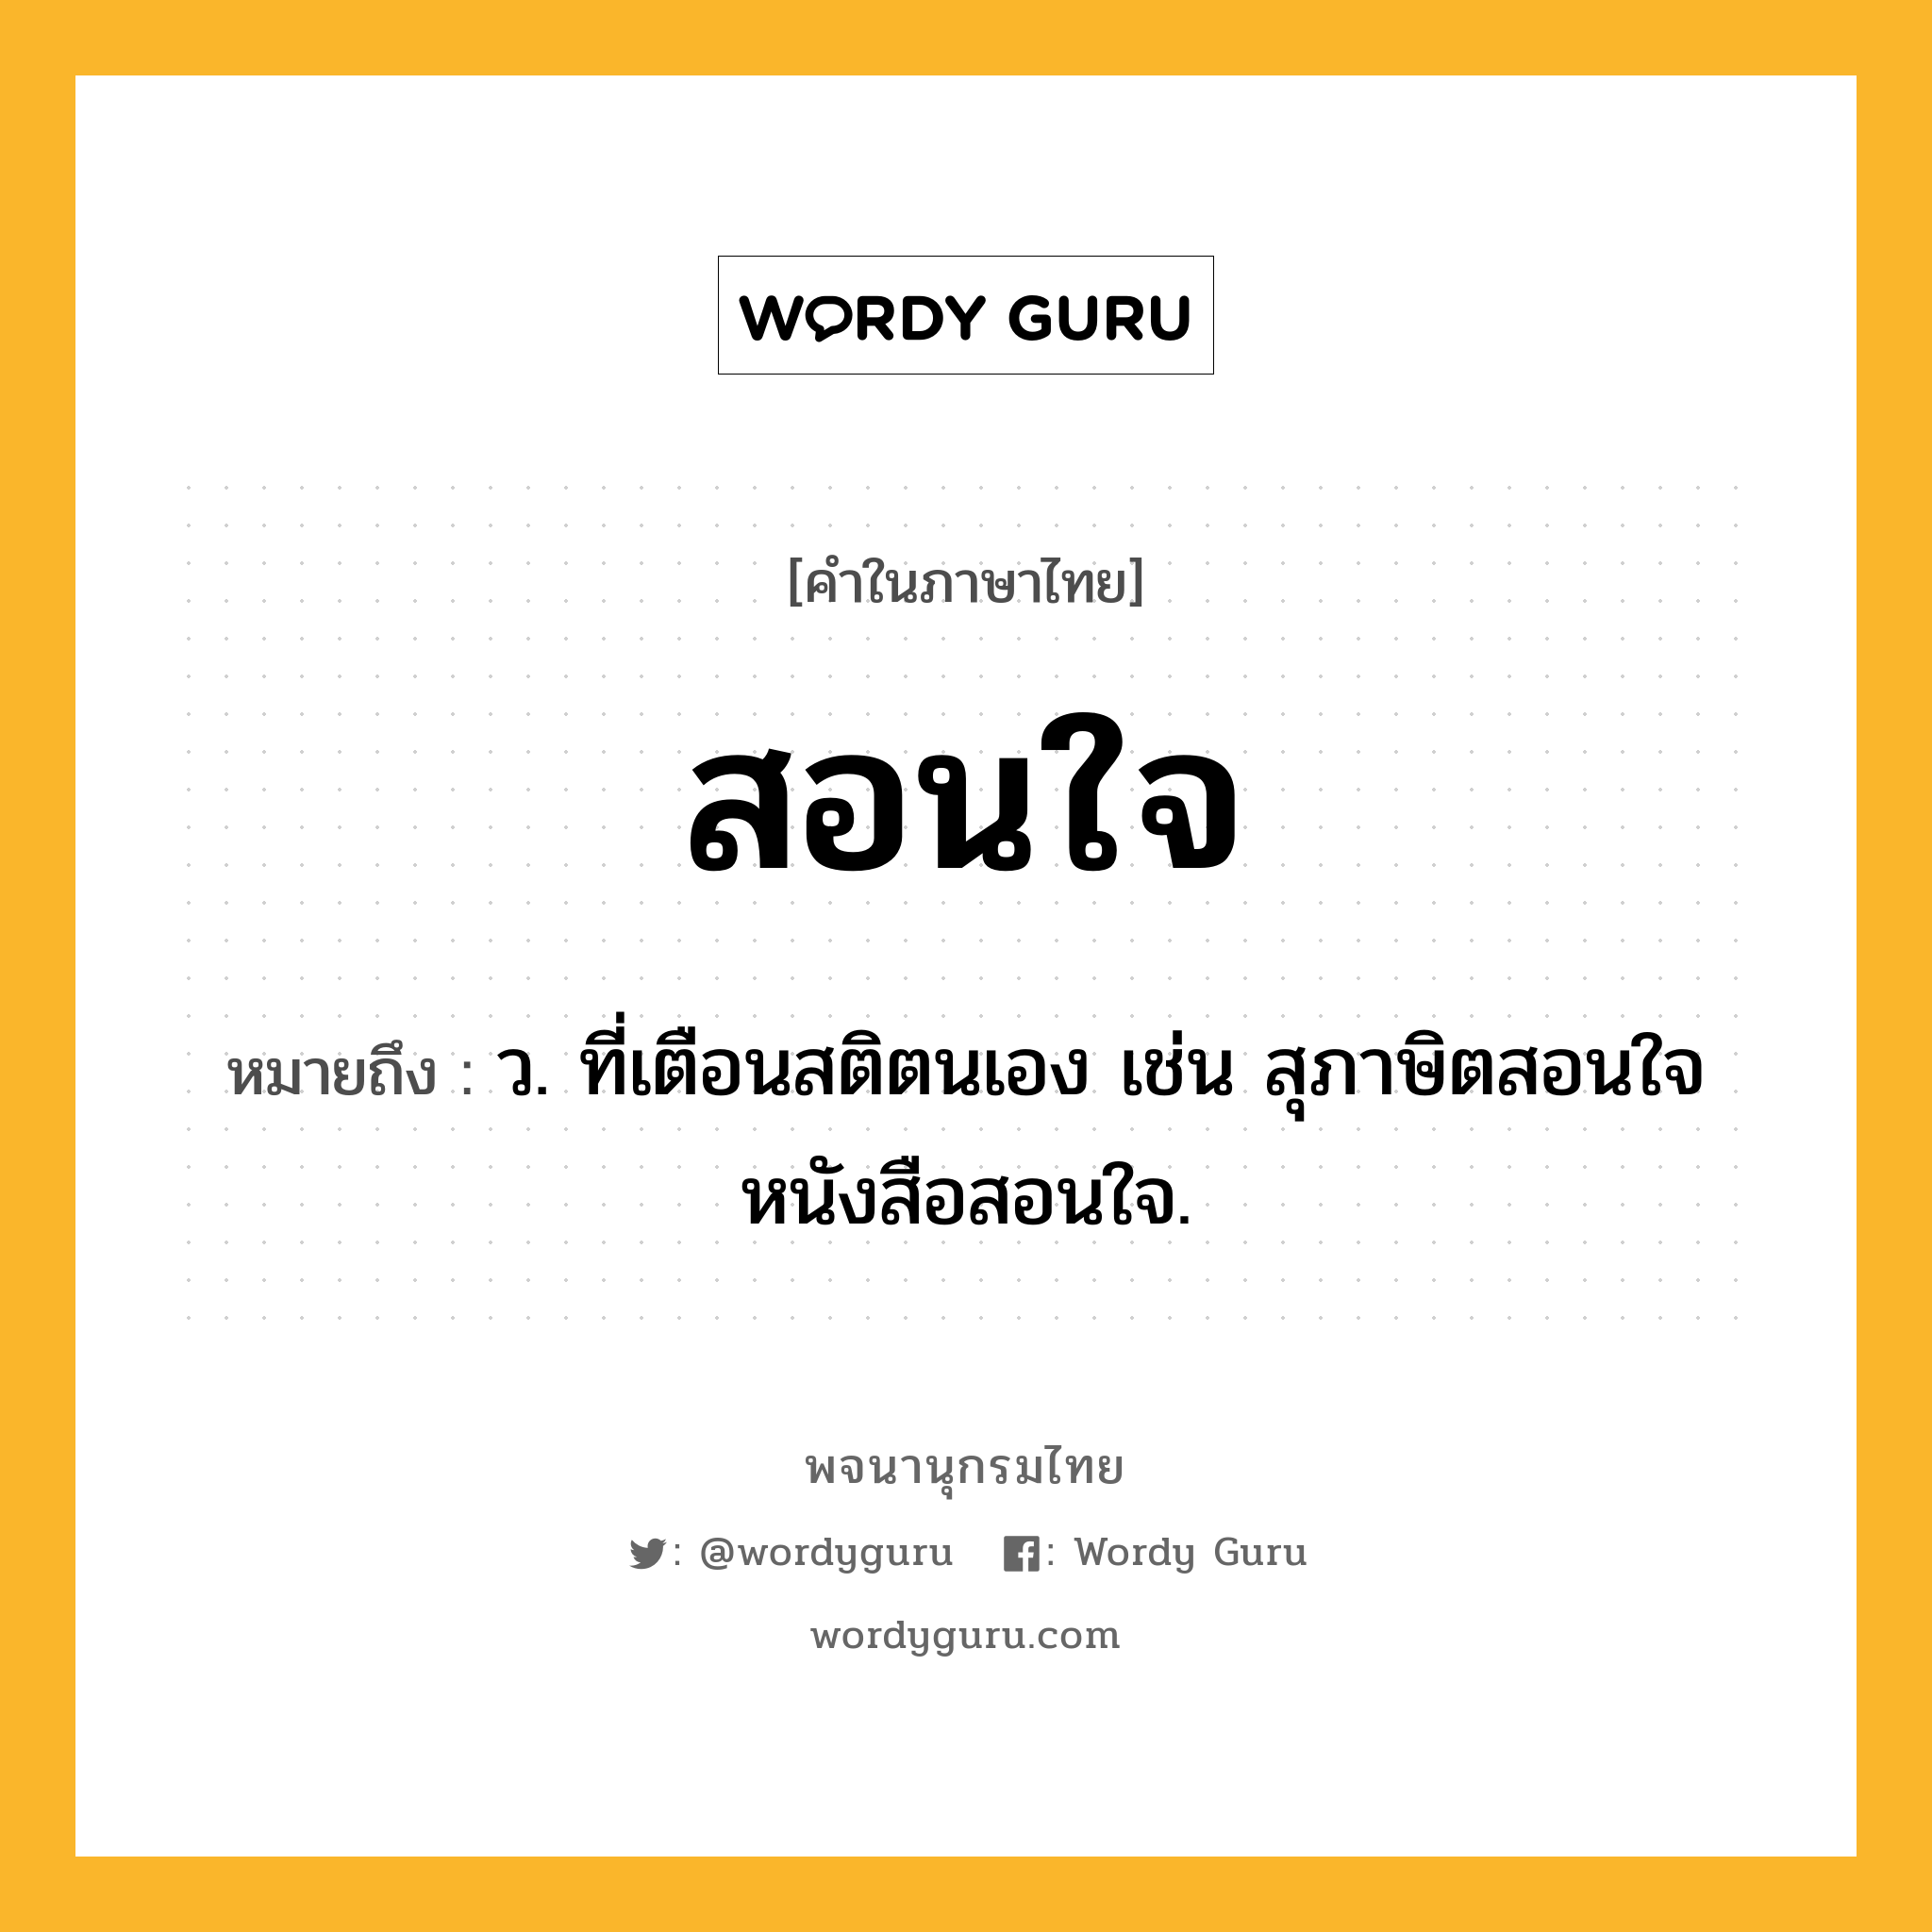 สอนใจ ความหมาย หมายถึงอะไร?, คำในภาษาไทย สอนใจ หมายถึง ว. ที่เตือนสติตนเอง เช่น สุภาษิตสอนใจ หนังสือสอนใจ.